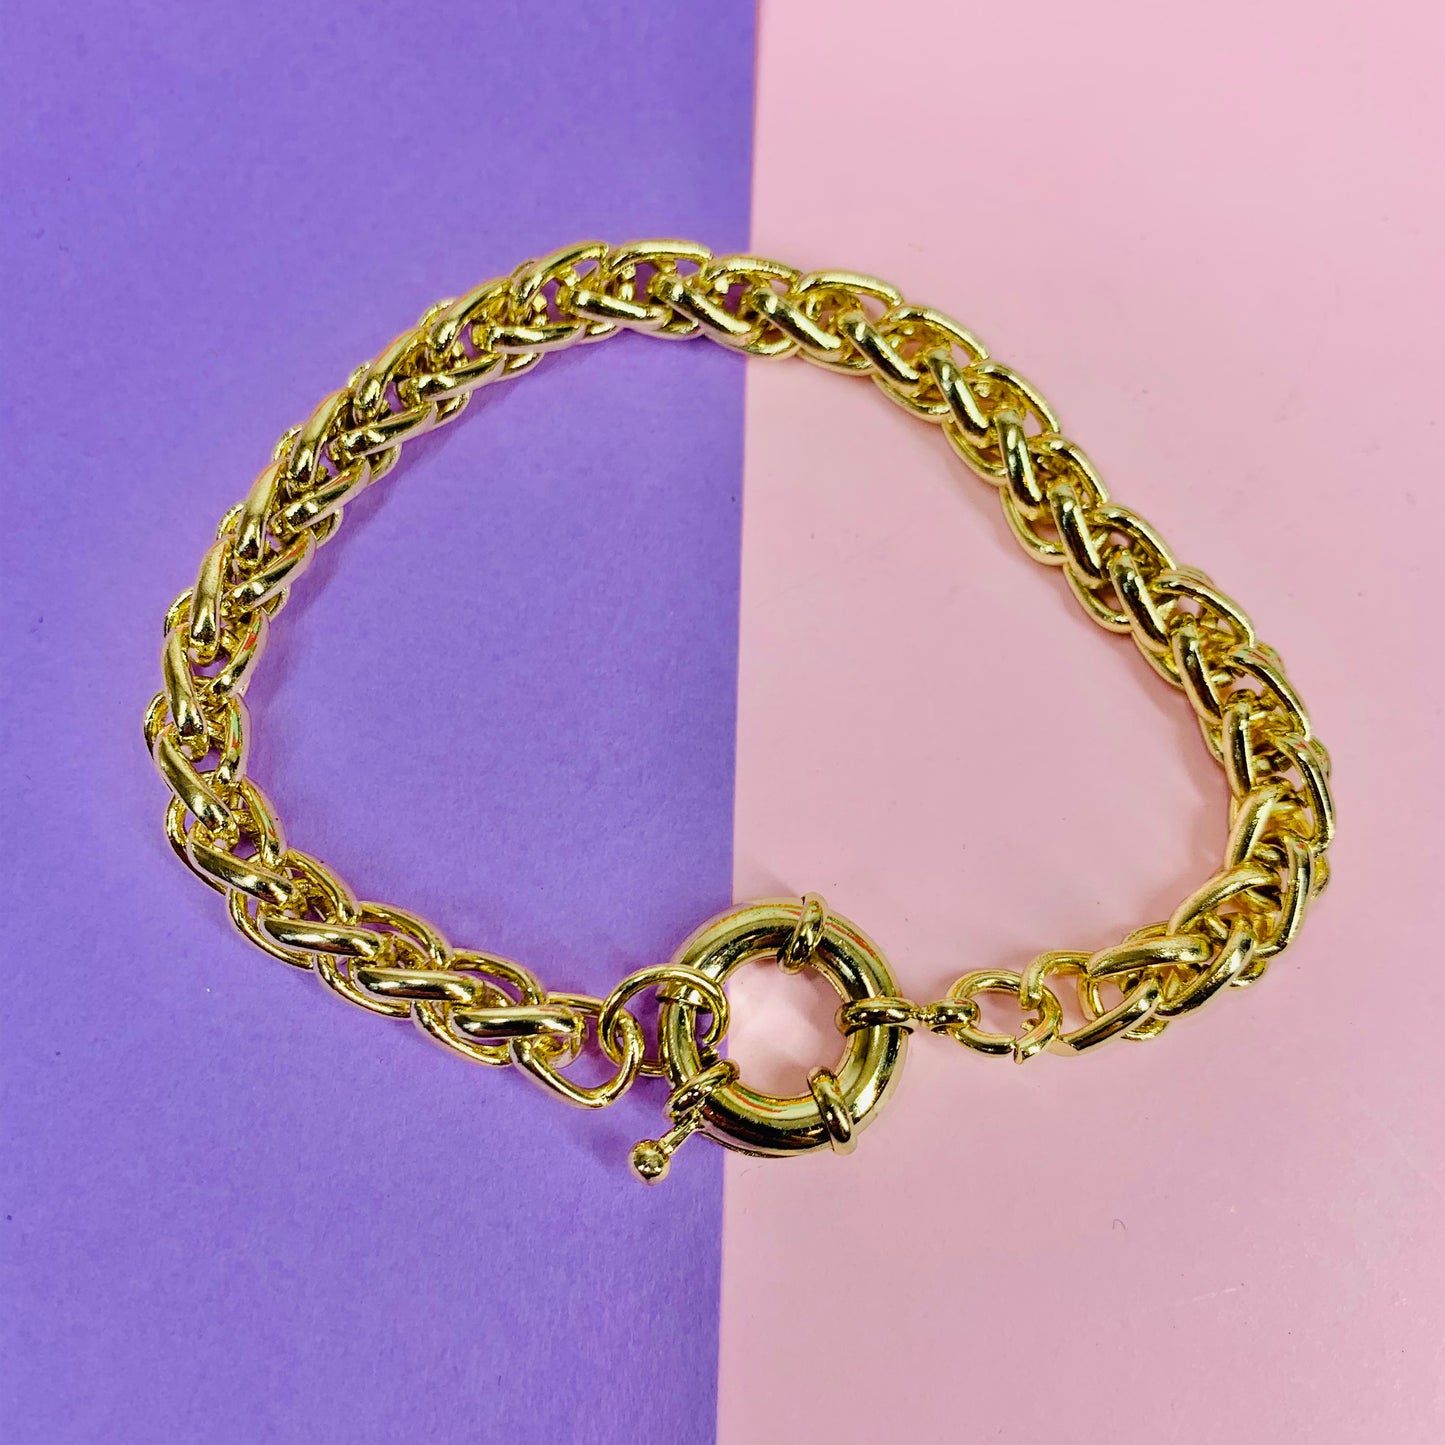 Vintage 18K gold plated belcher bracelet